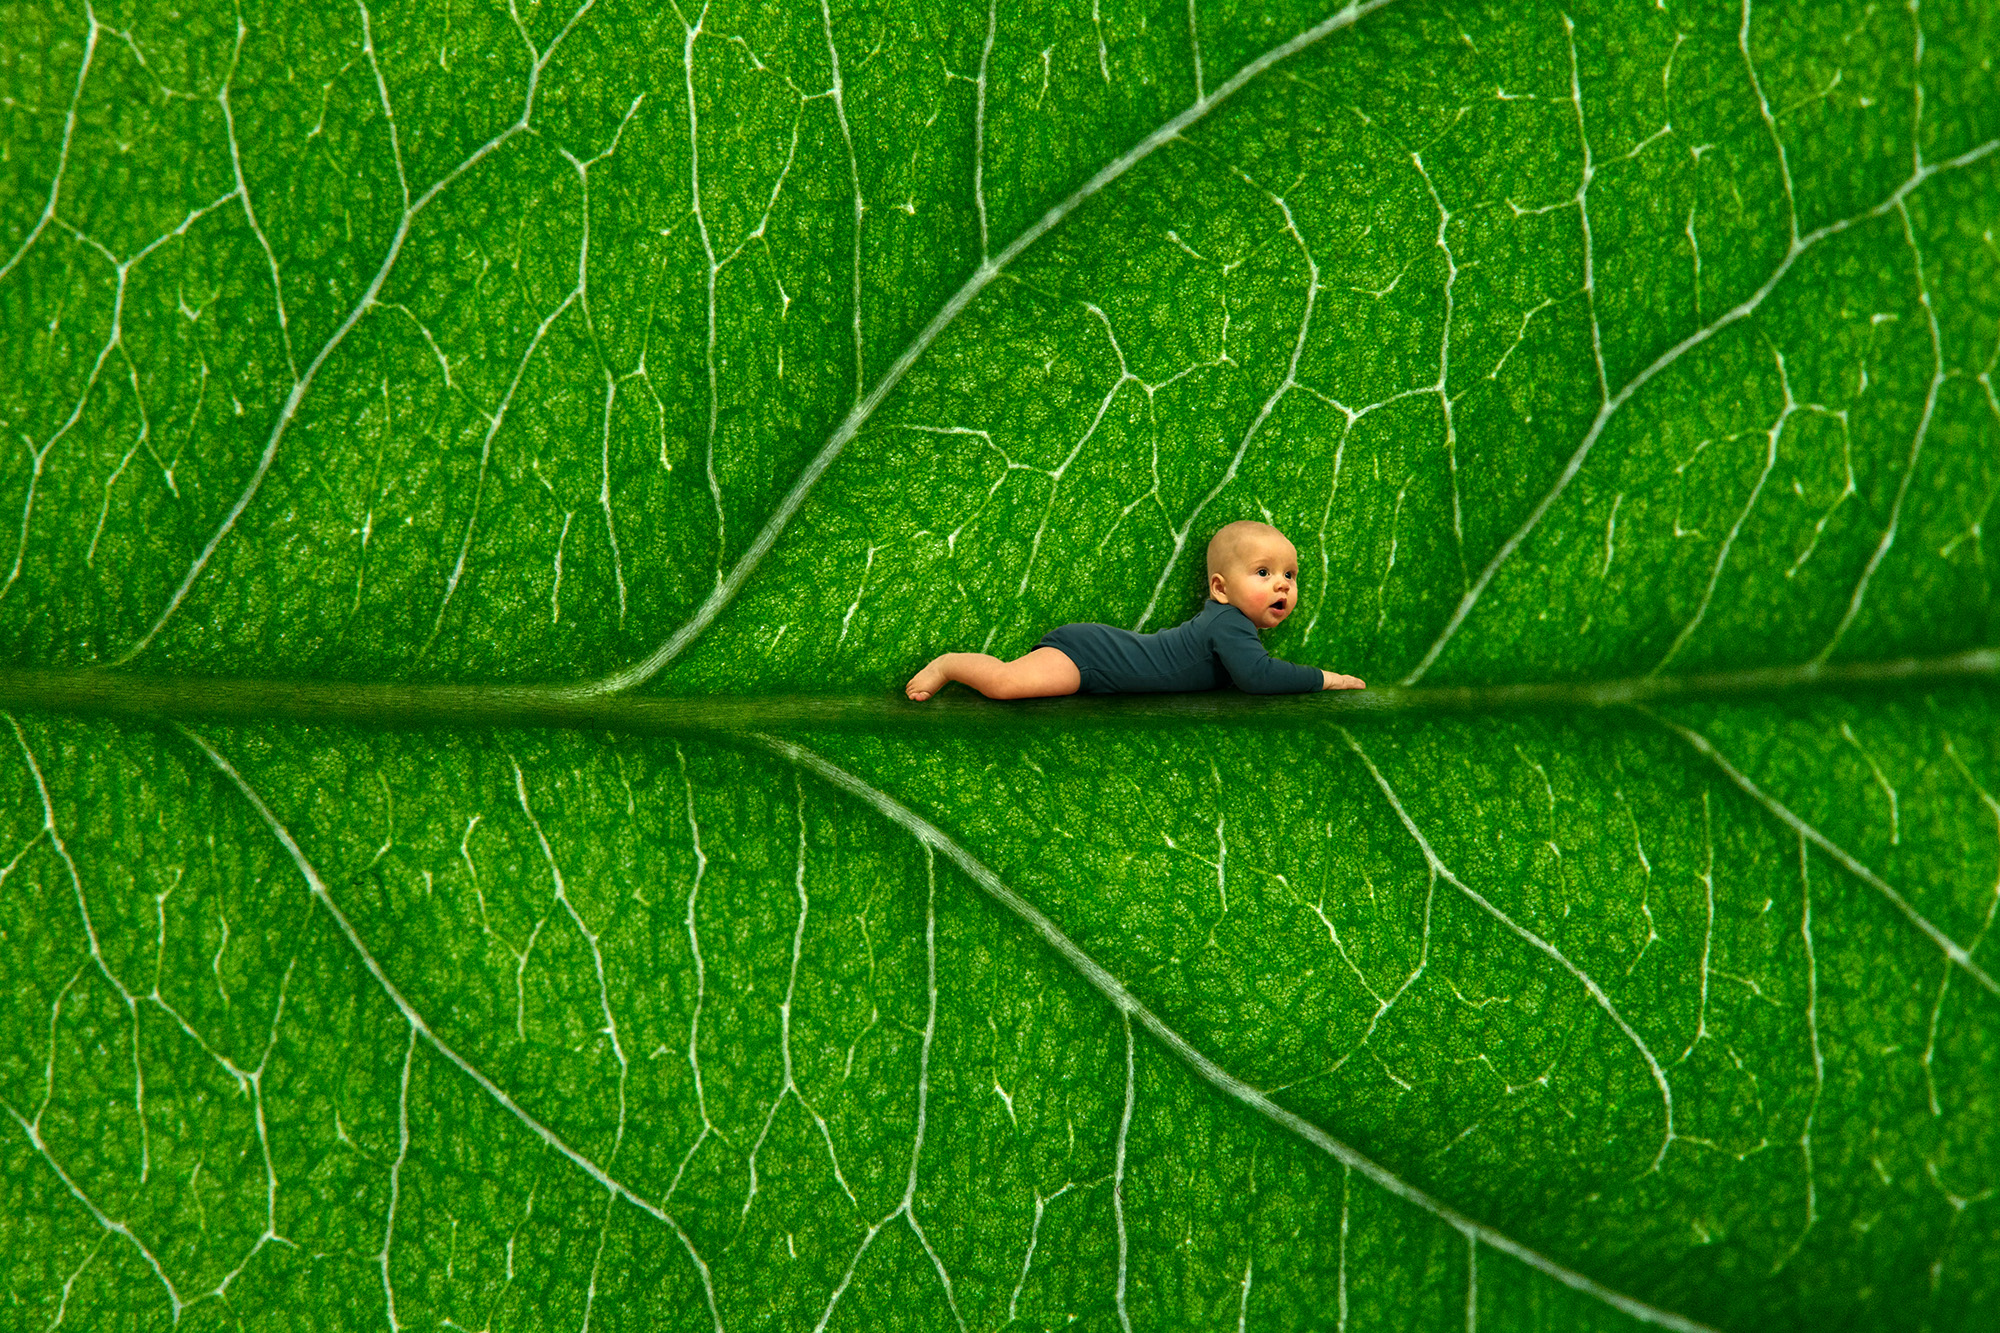 Lähikuva kasvin vihreän lehden pinnasta. Lehtisuonen päällä on trikkikuvana pieni vauva tummanvihreässä bodyssa mahallaan ja pää pystyssä.